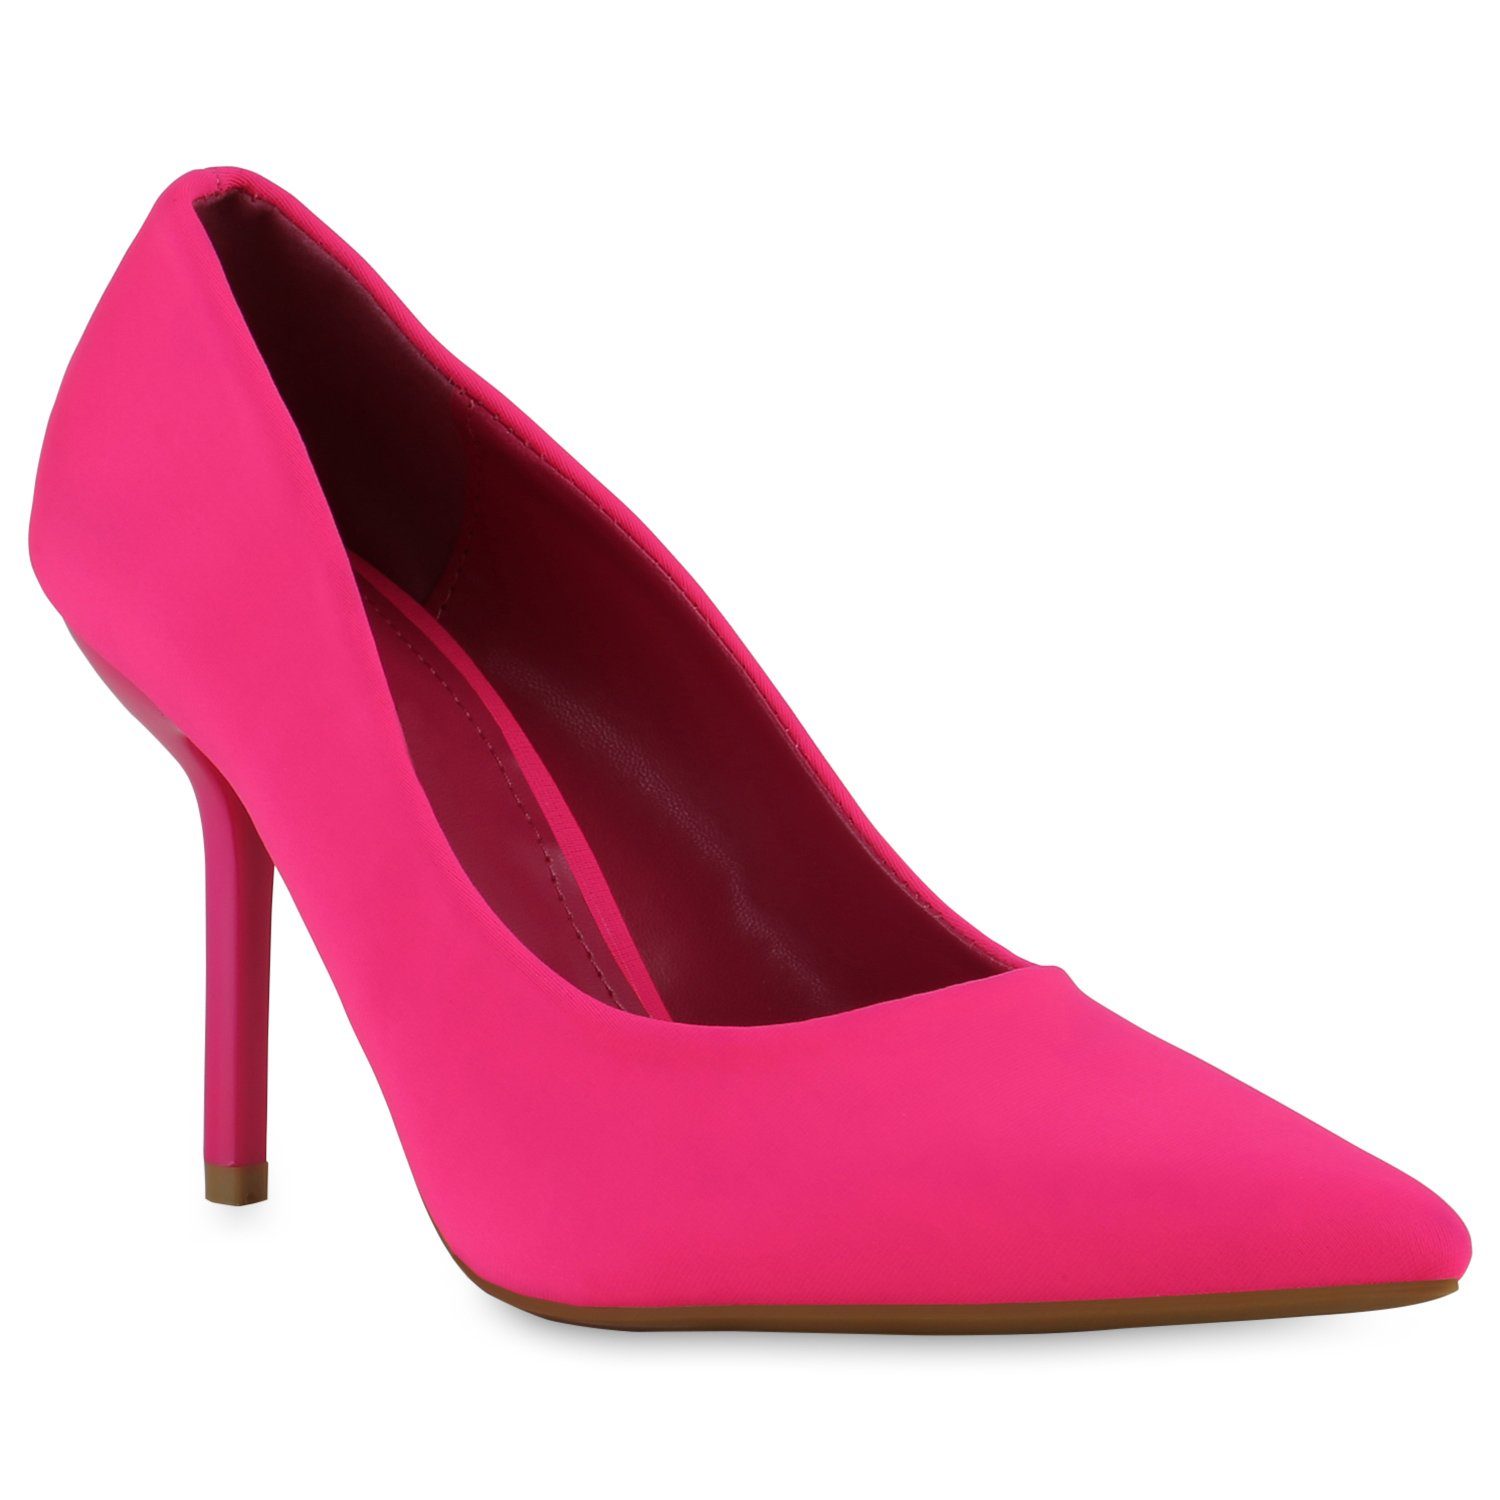 VAN HILL 839349 Pumps Bequeme Schuhe Neon Pink